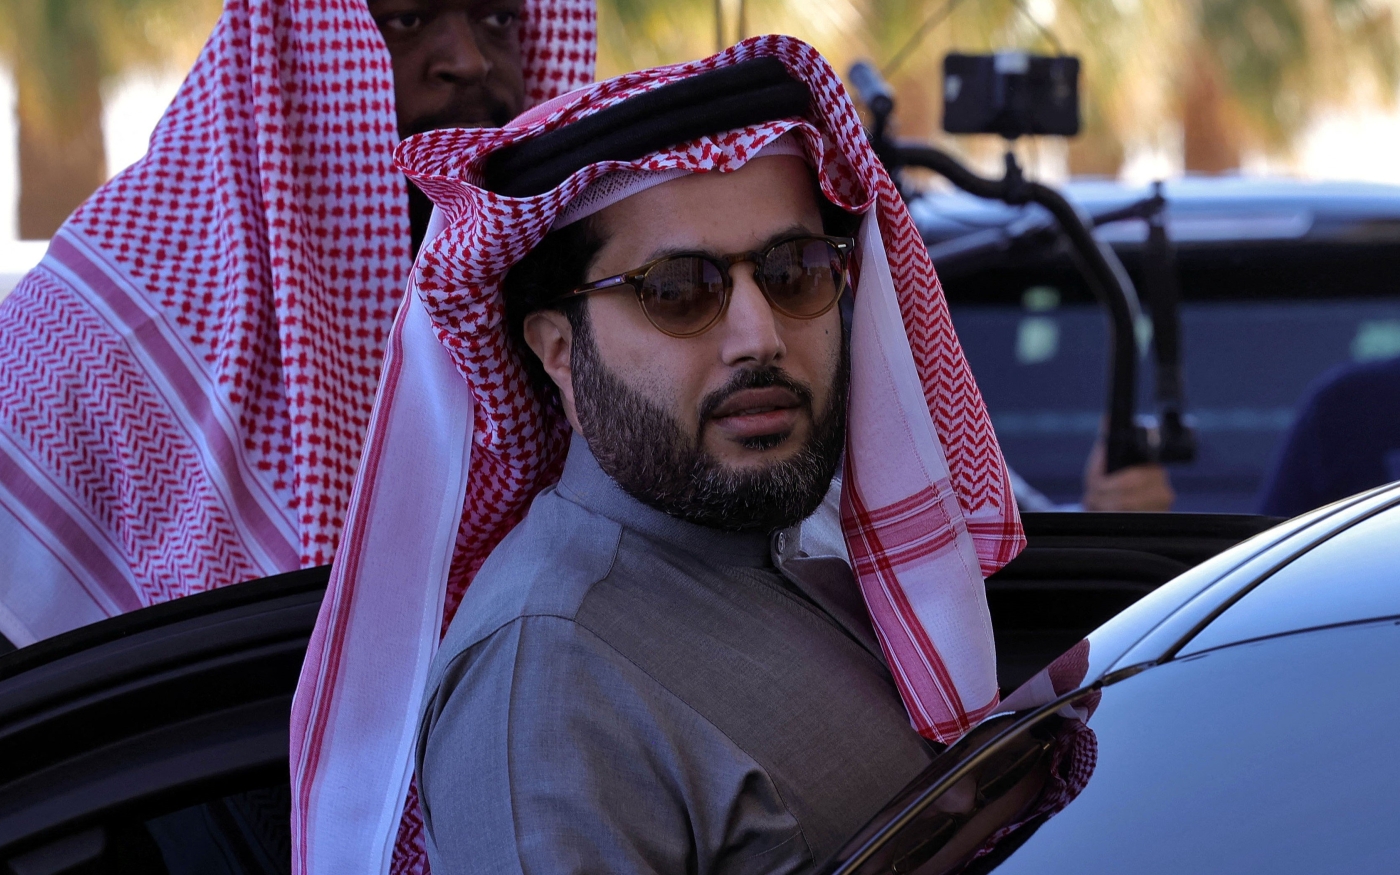 Turki al-Sheikh aurait fait déprogrammer une série après une passe d’armes personnelle avec un acteur (AFP/Fayez Nureldine)